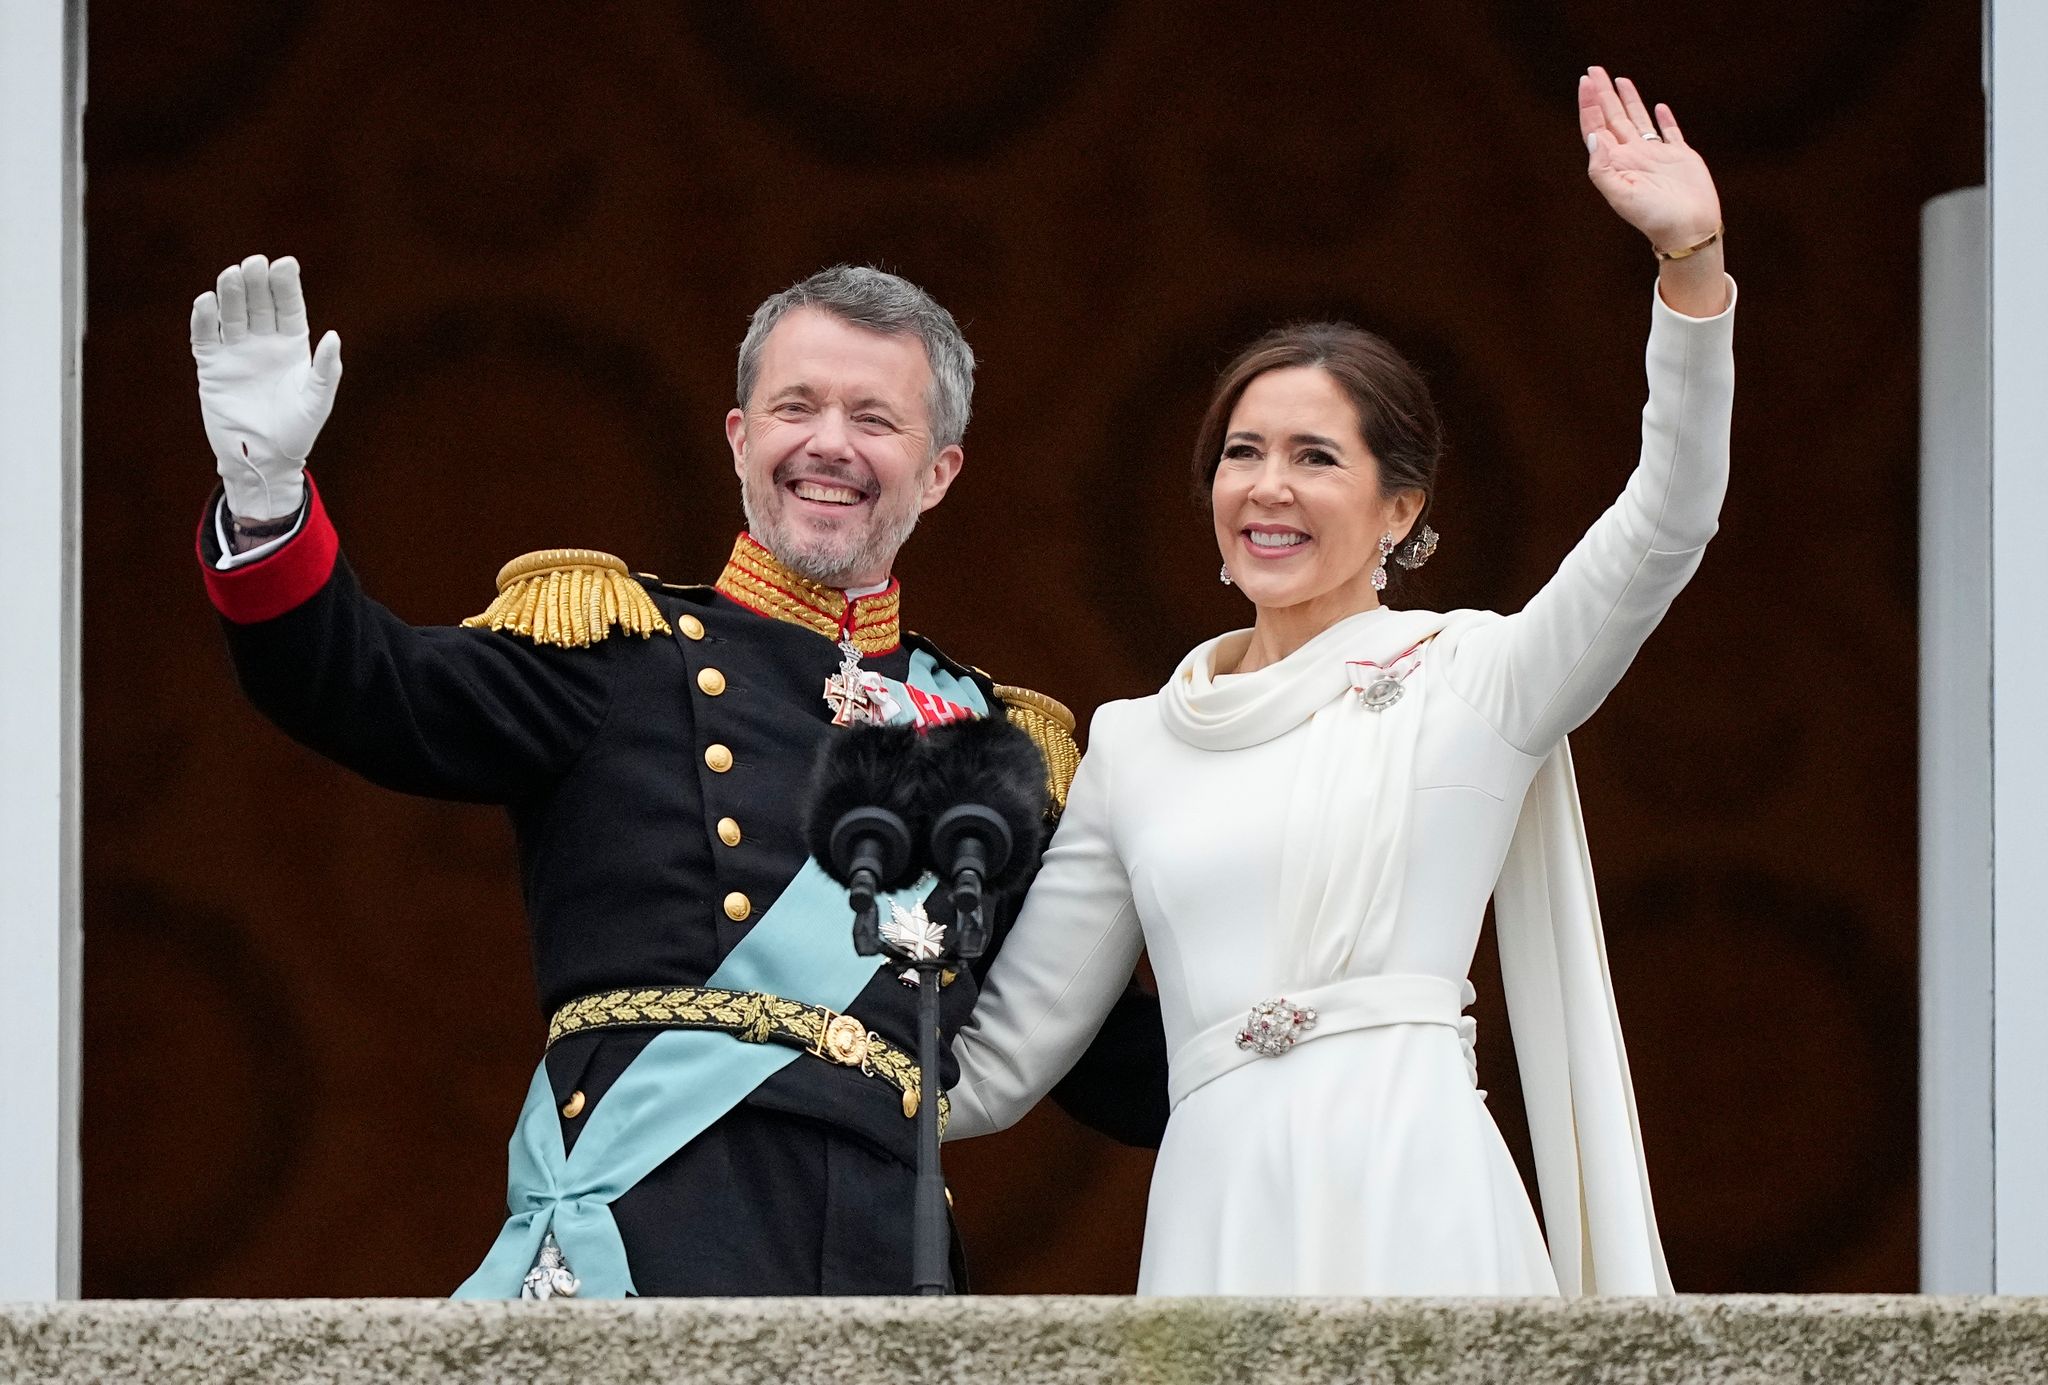 Dänemarks neues Königspaar: König Frederik X. und Dänemarks Königin Mary auf dem Balkon von Schloss Christiansborg.